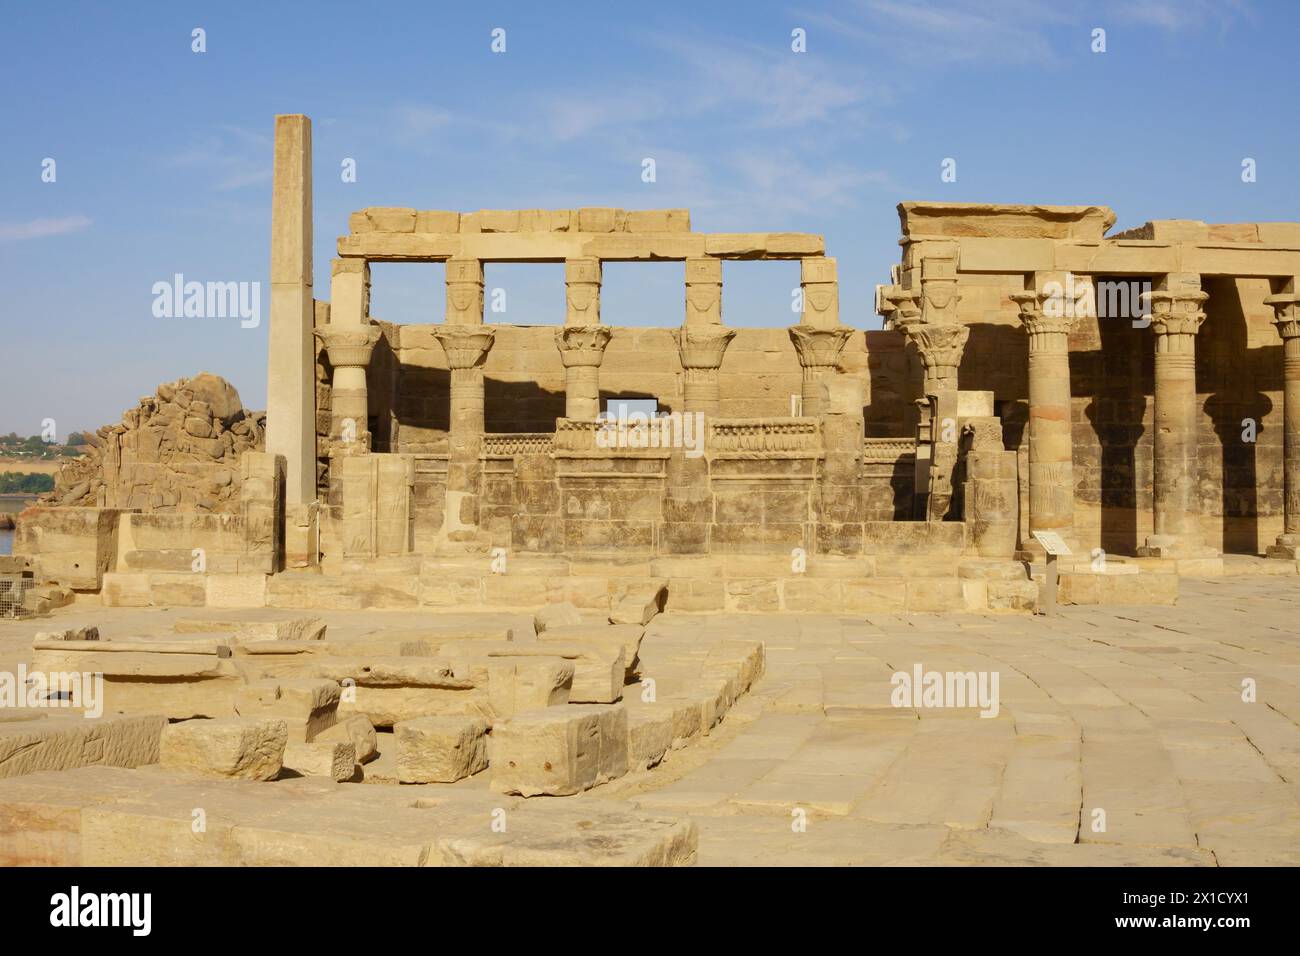 Colonnades orientales, complexe du temple de Philae, île d'Agilkia, réservoir du barrage d'Assouan. Lieu de sépulture d'Osiris. Égypte Banque D'Images